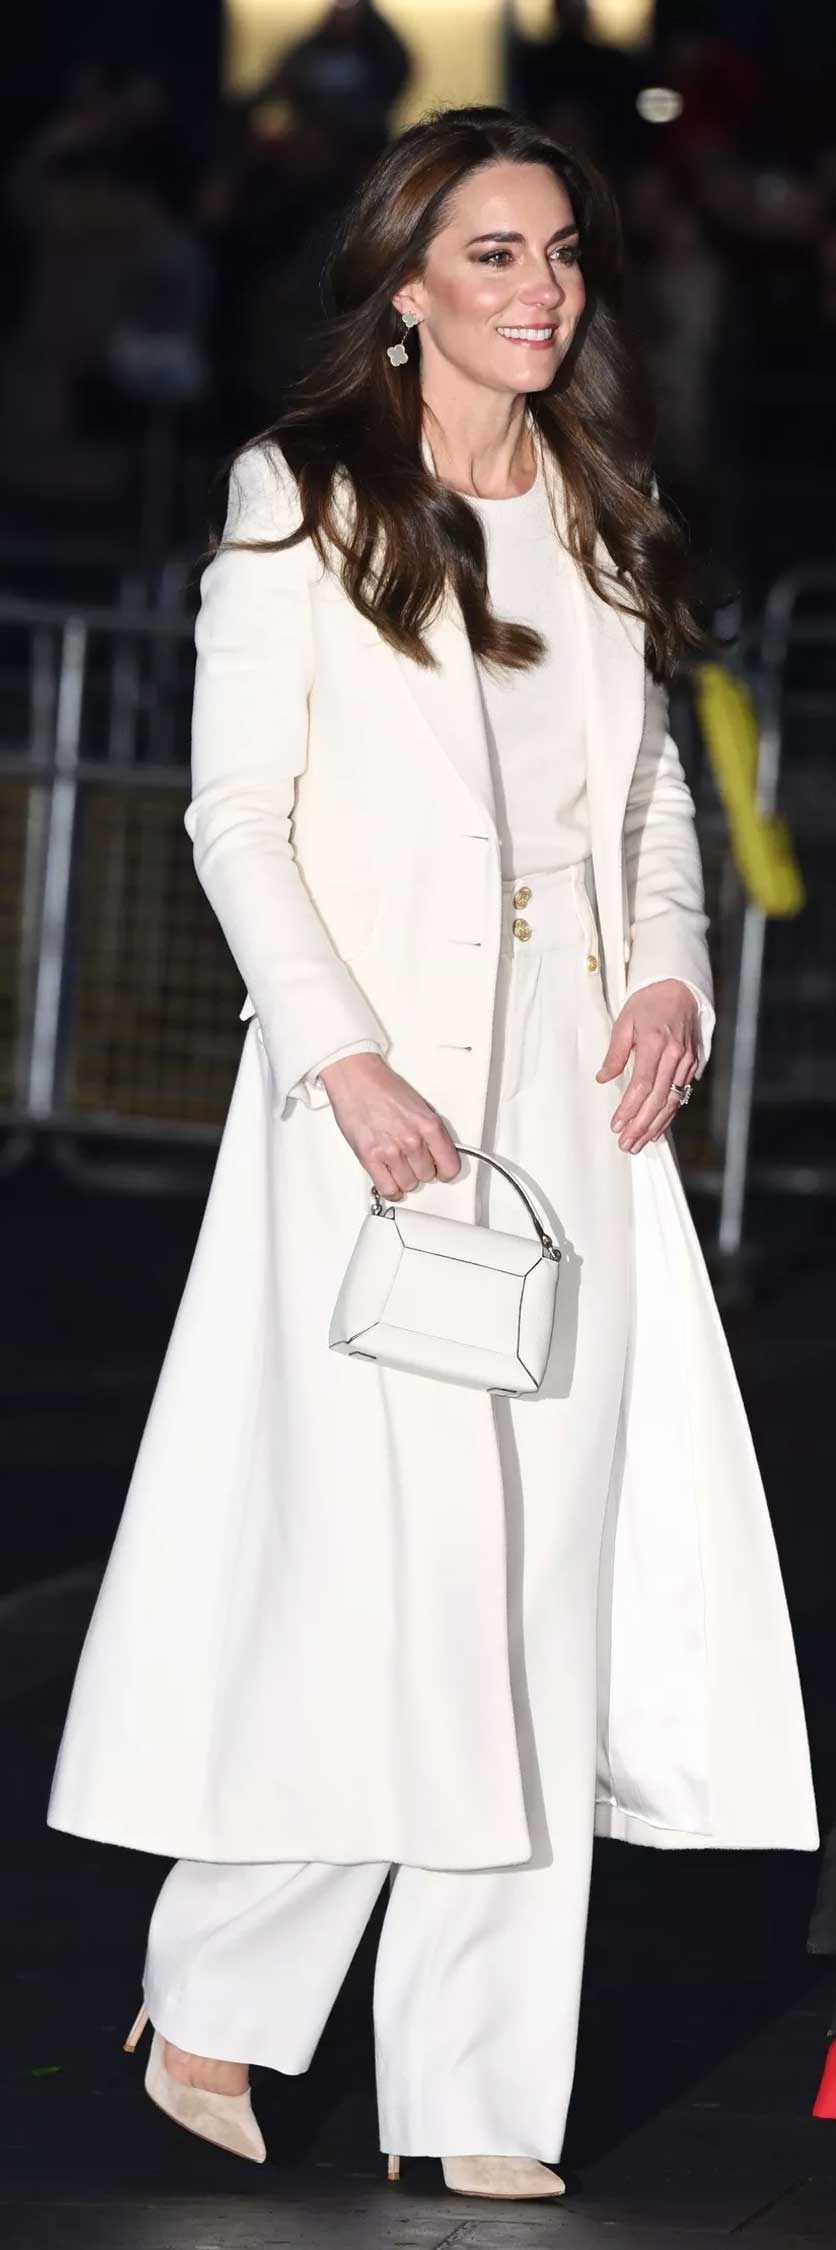 Kate Middleton makes heads turn with luxurious fashion sense